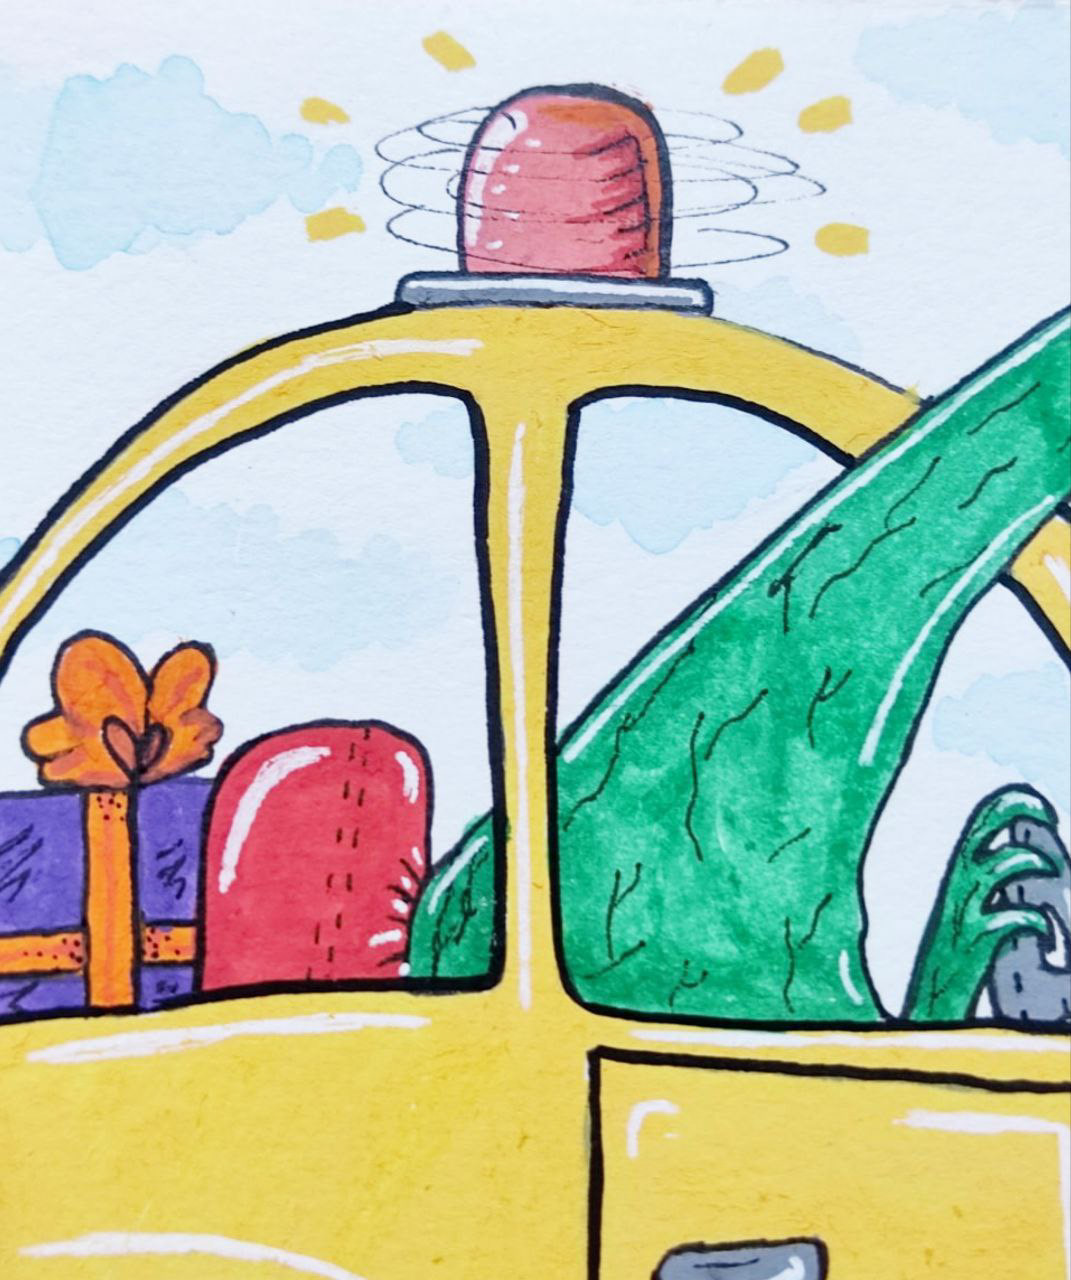 Birthday car children's book ChildrenIllustration childrensliterature Dinosaur ILLUSTRATION  literature party WackyRaces